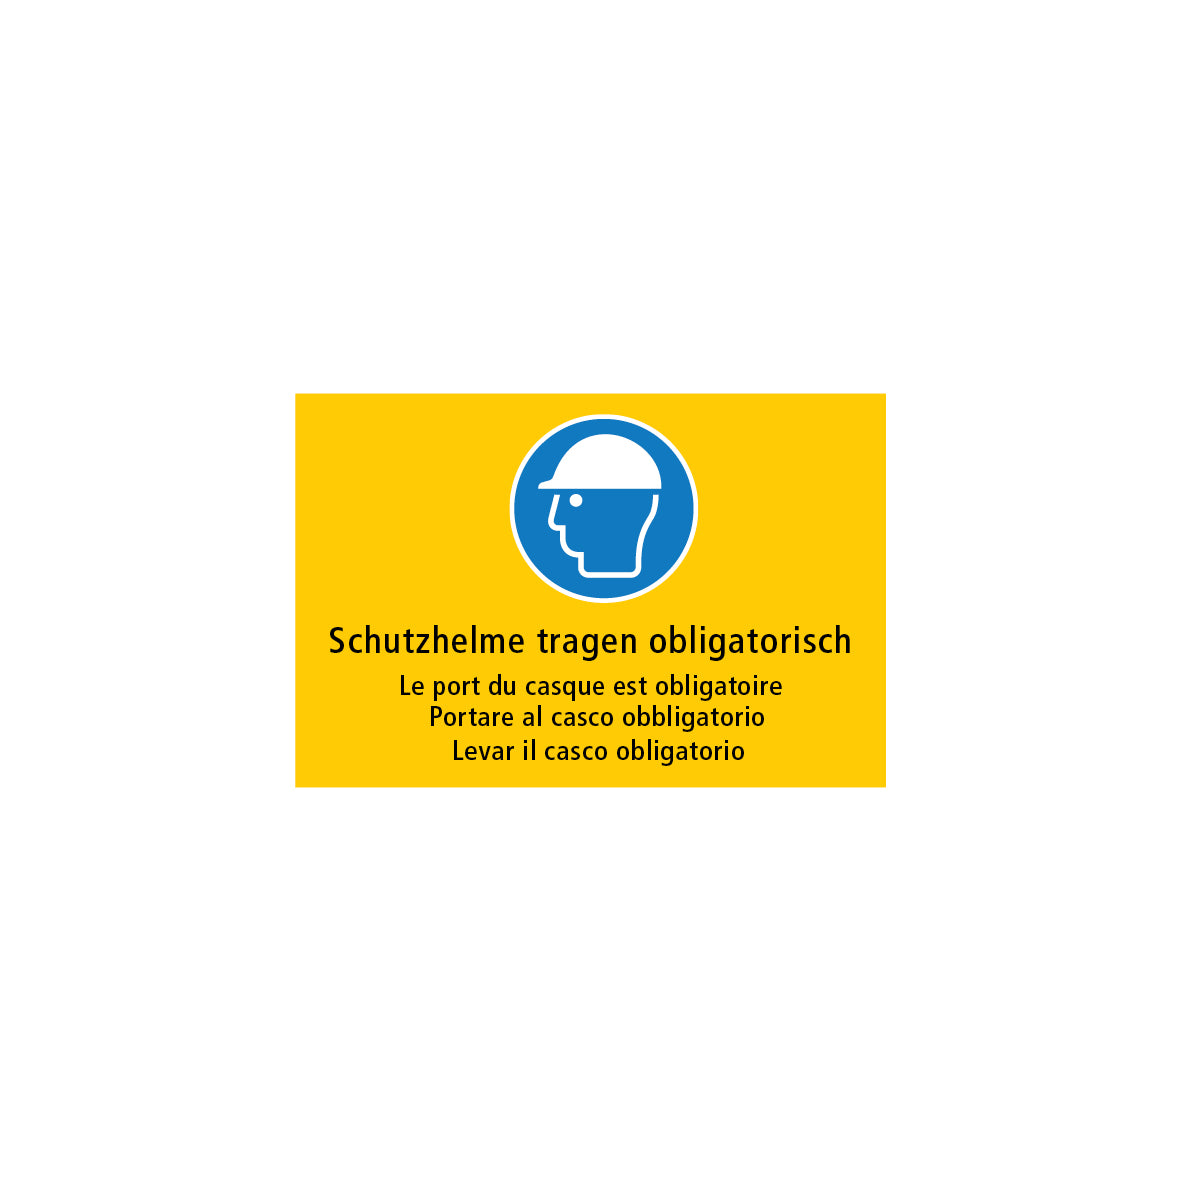 Baustellentafel, Schutzhelme tragen obligatorisch, 60/40 cm, gelb/schwarz, EG, 7.0165